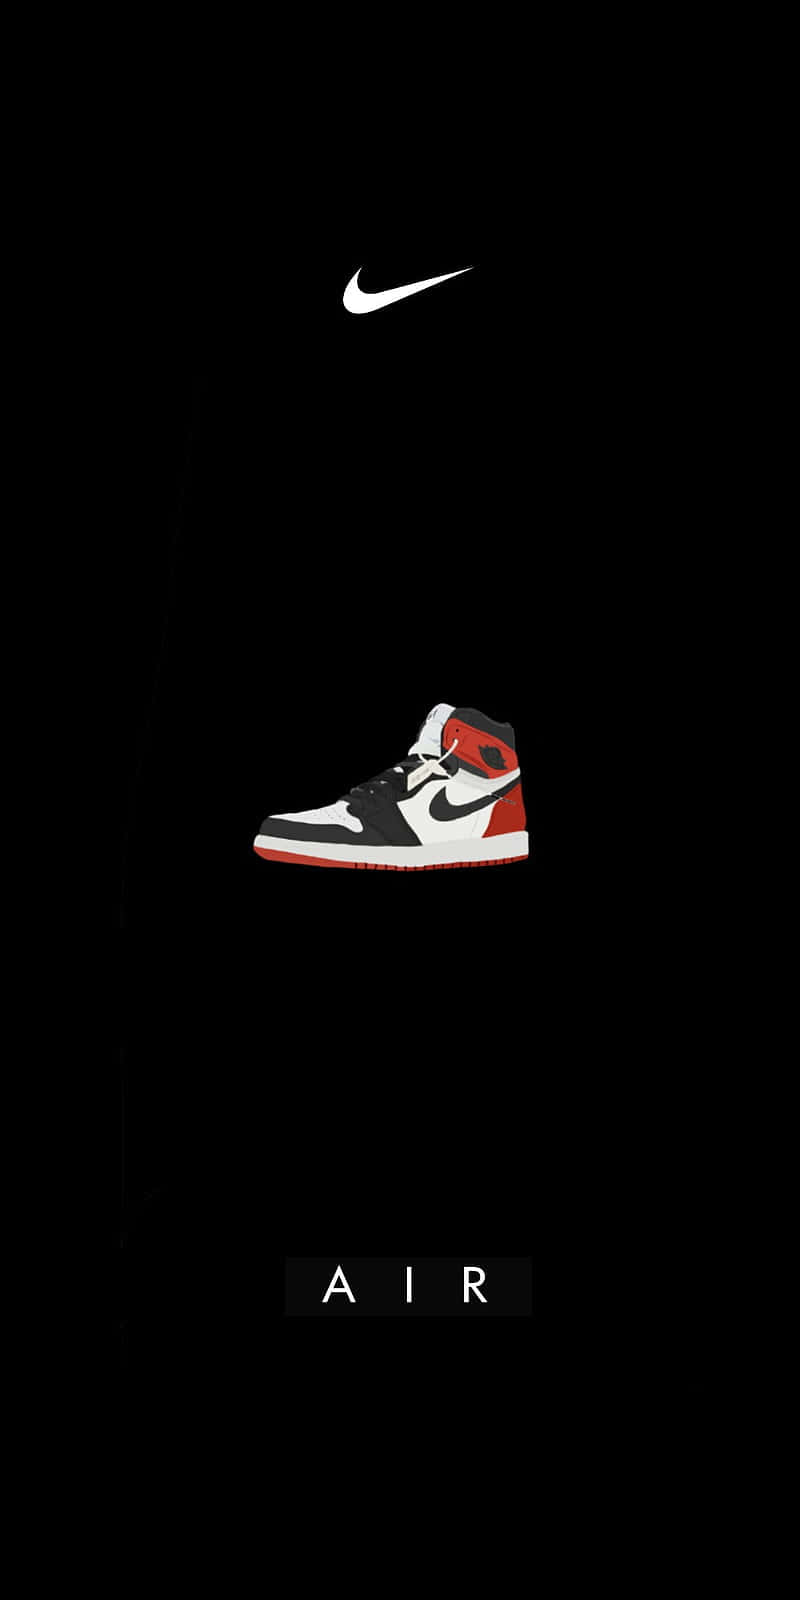 Nike Jordan Air 1 Sko Checker-vægmaleri Wallpaper